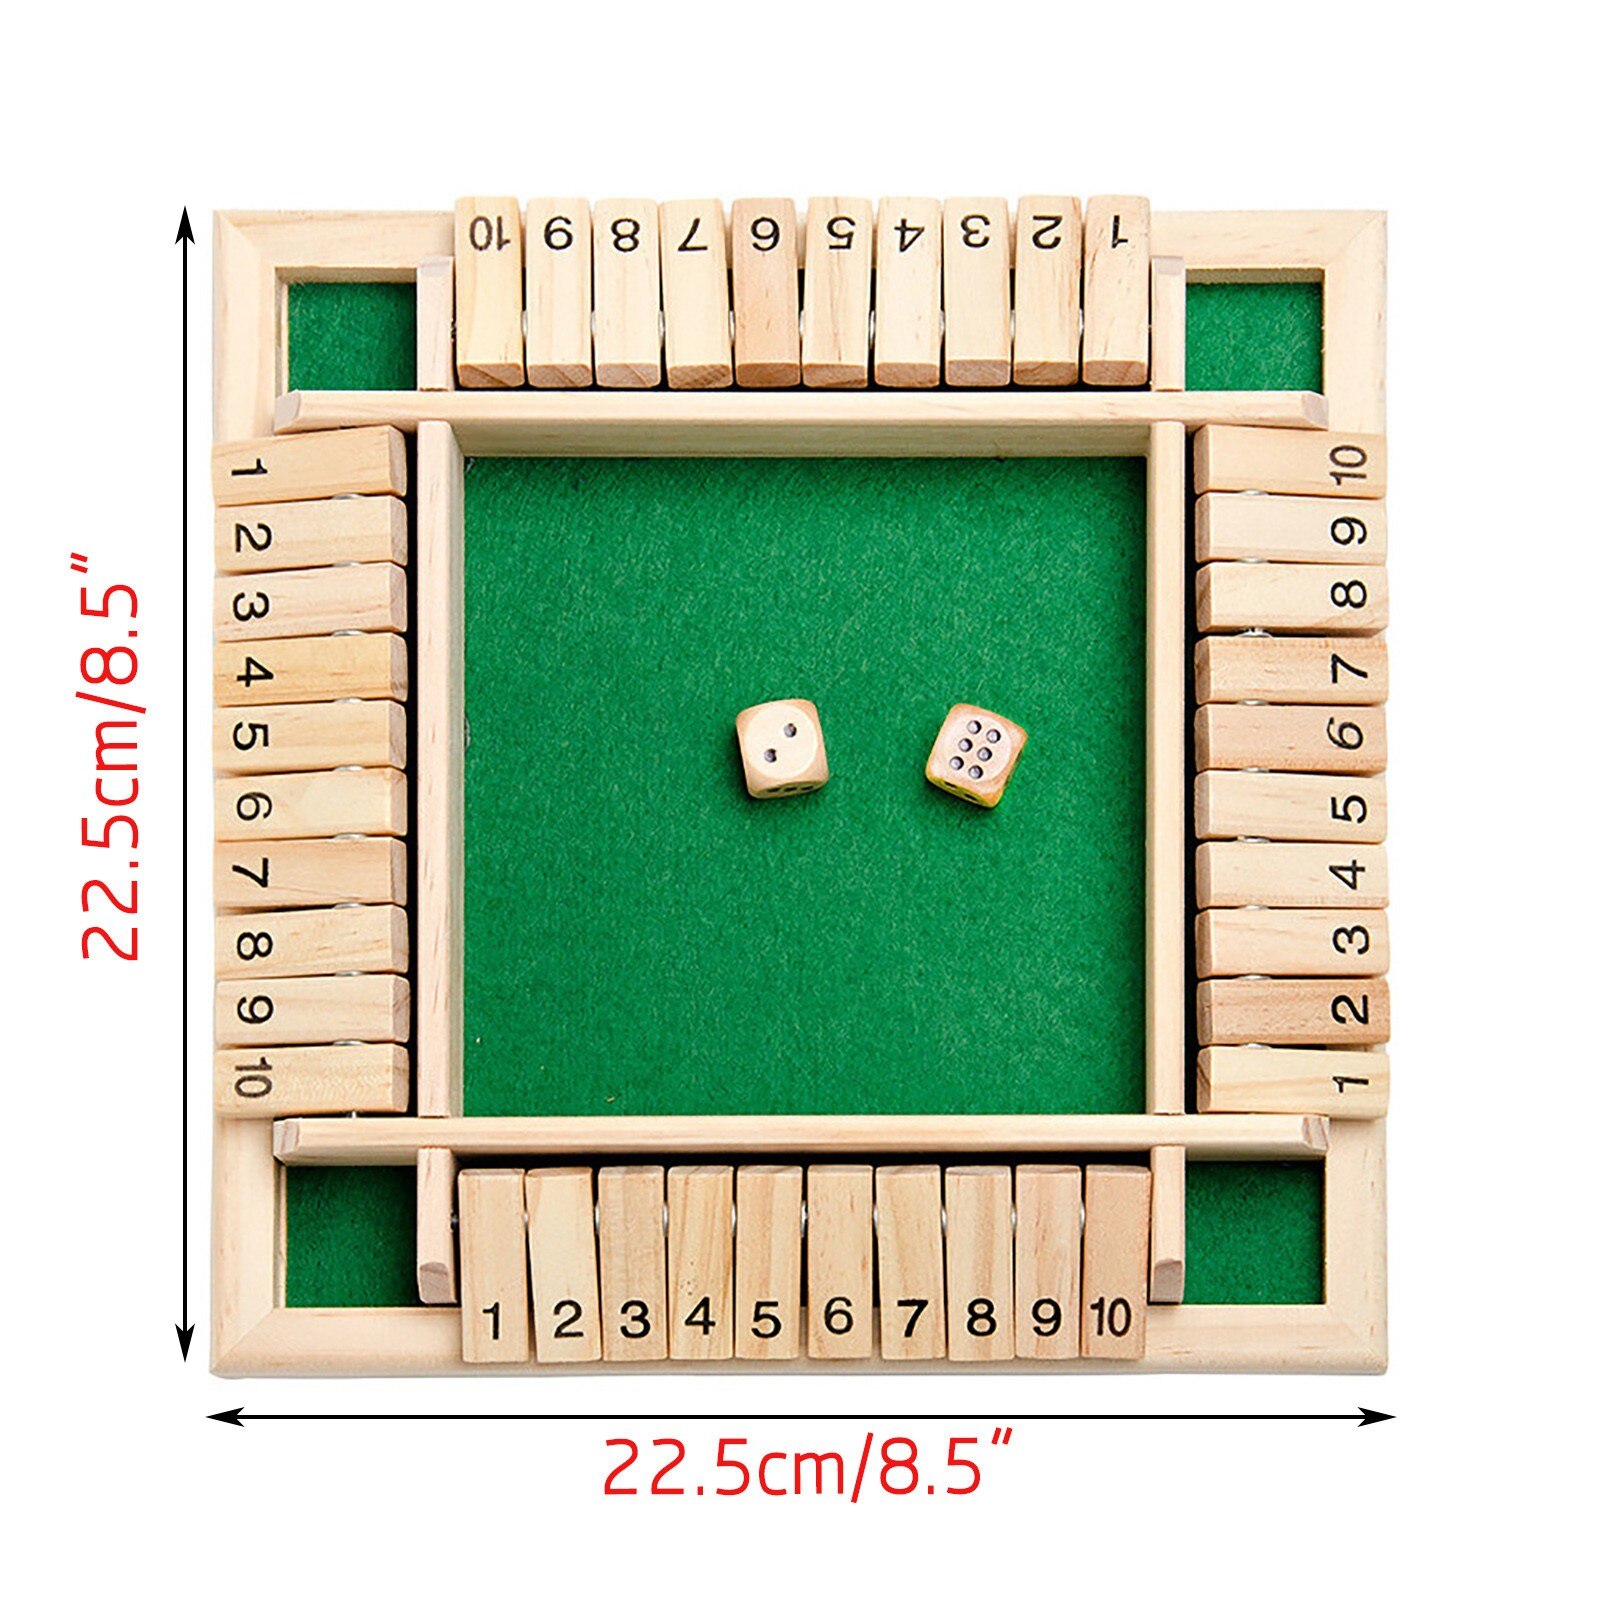 Fermez la boîte en bois mathématique traditionnel Pub plateau jeu de dés voyage 4 joueurs ensemble nombre jeux à boire pour les amis/la famille